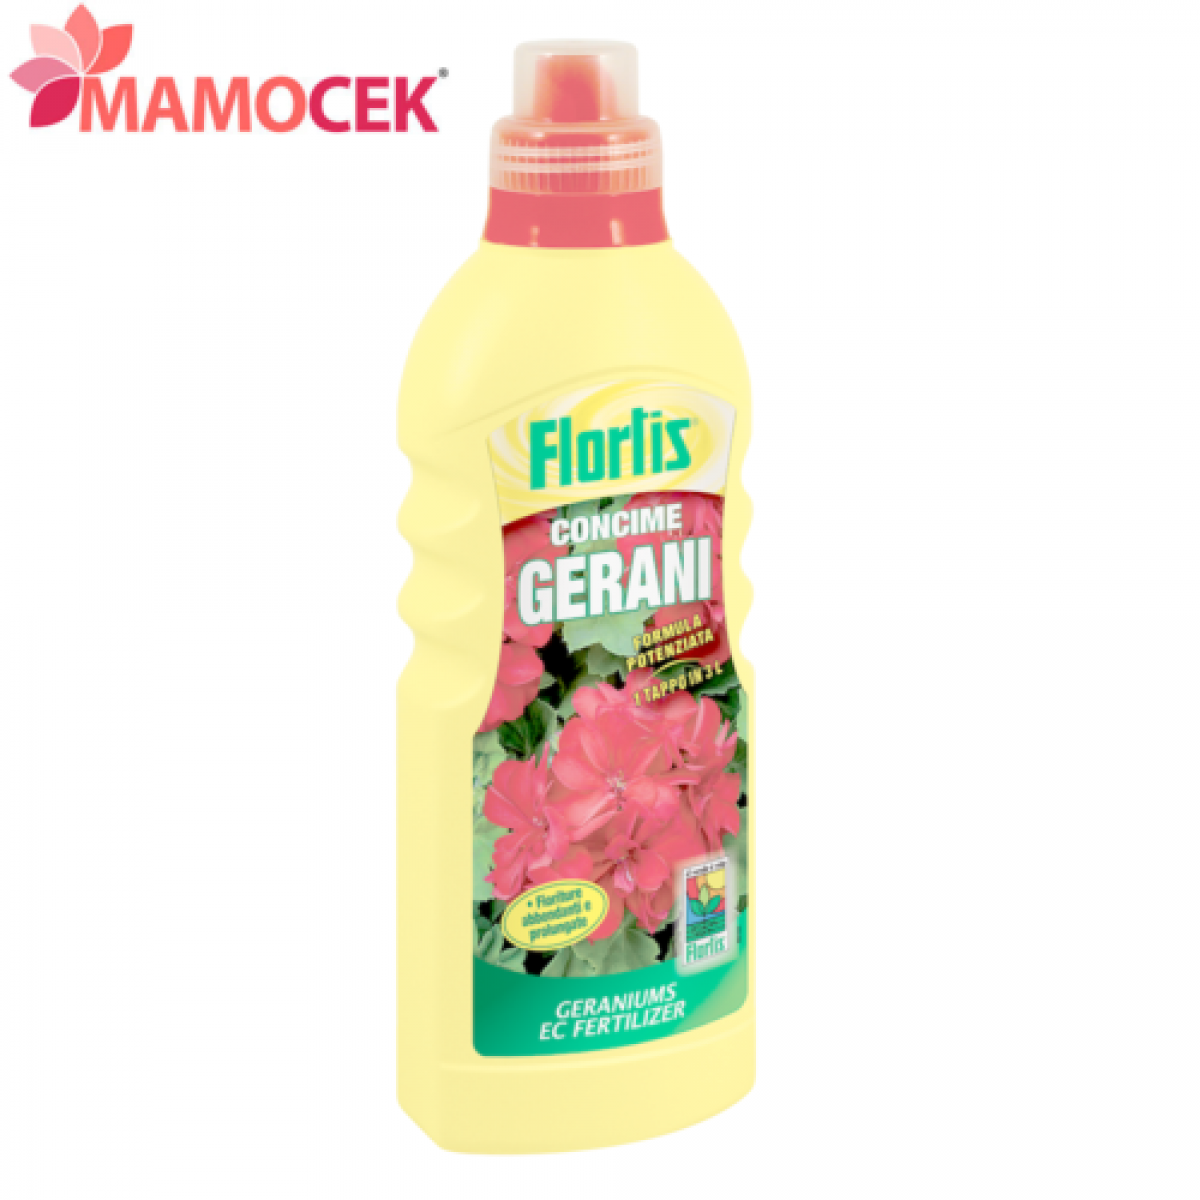 FLORTIS Concime liquido gerani e piante fiorite fertilizzante fiori conf. 1150 gr